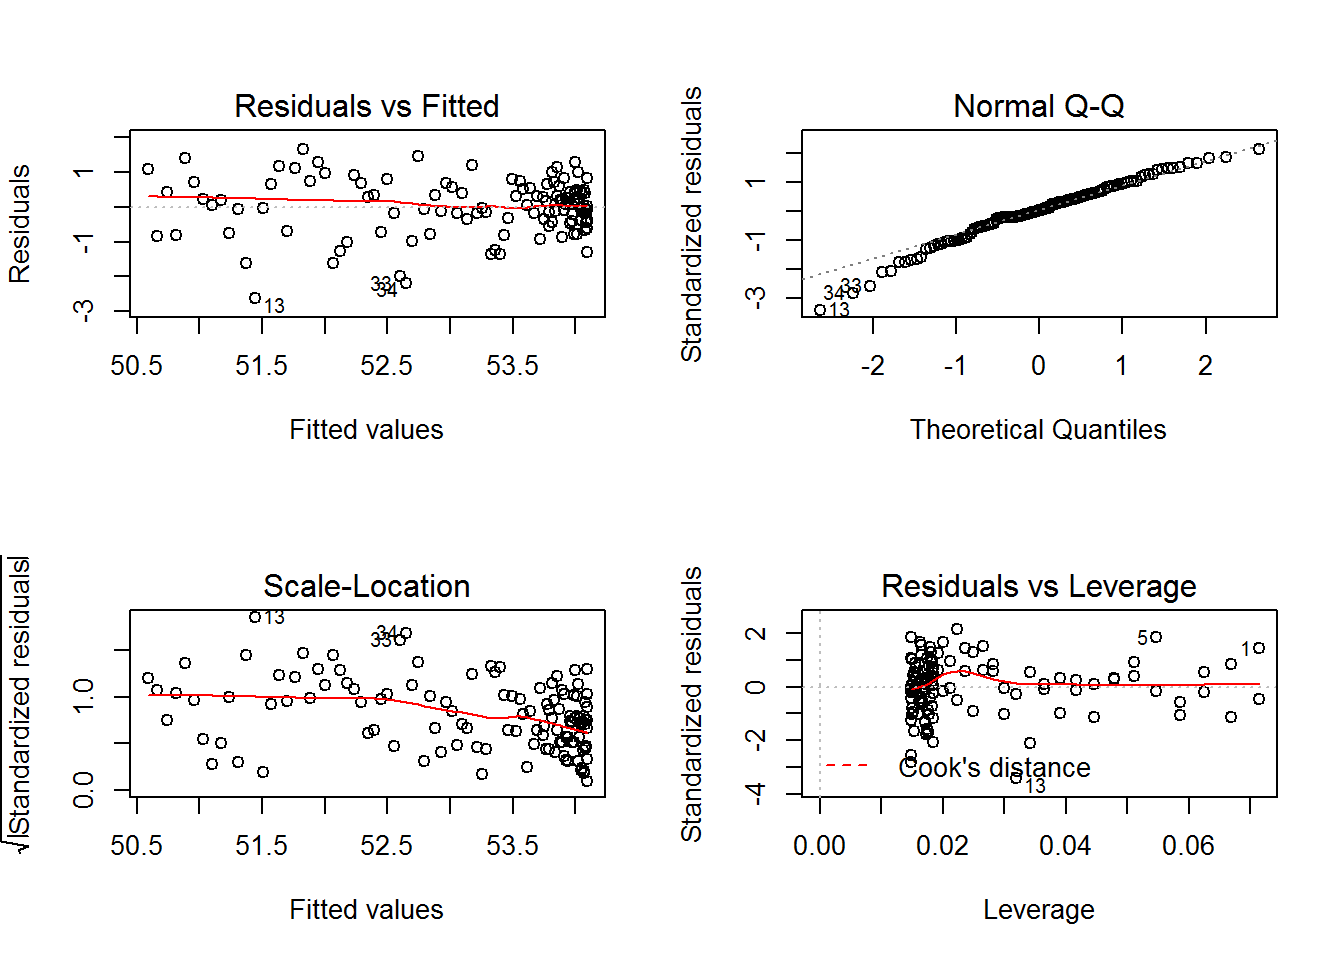 Residual plots for Model 2Q